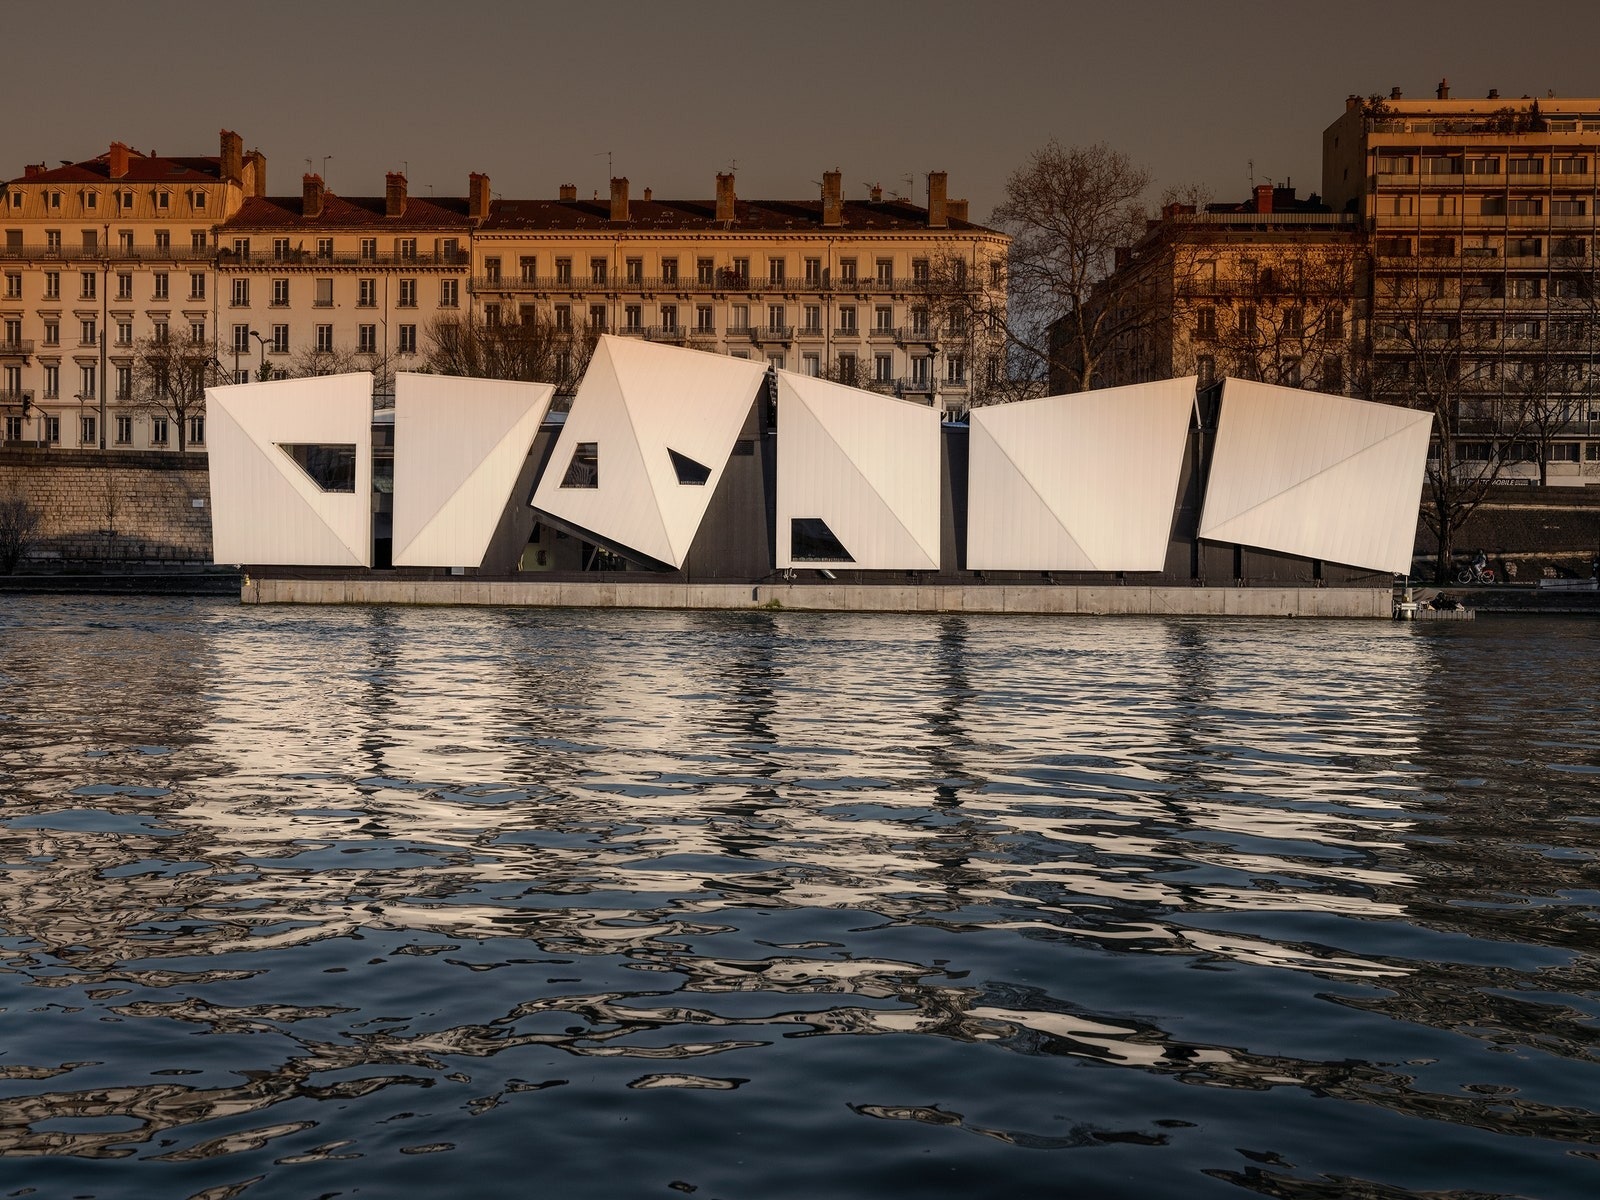 水に浮かぶ未来の水上都市を構想するオランダ人建築家コーエン・オルトゥイス